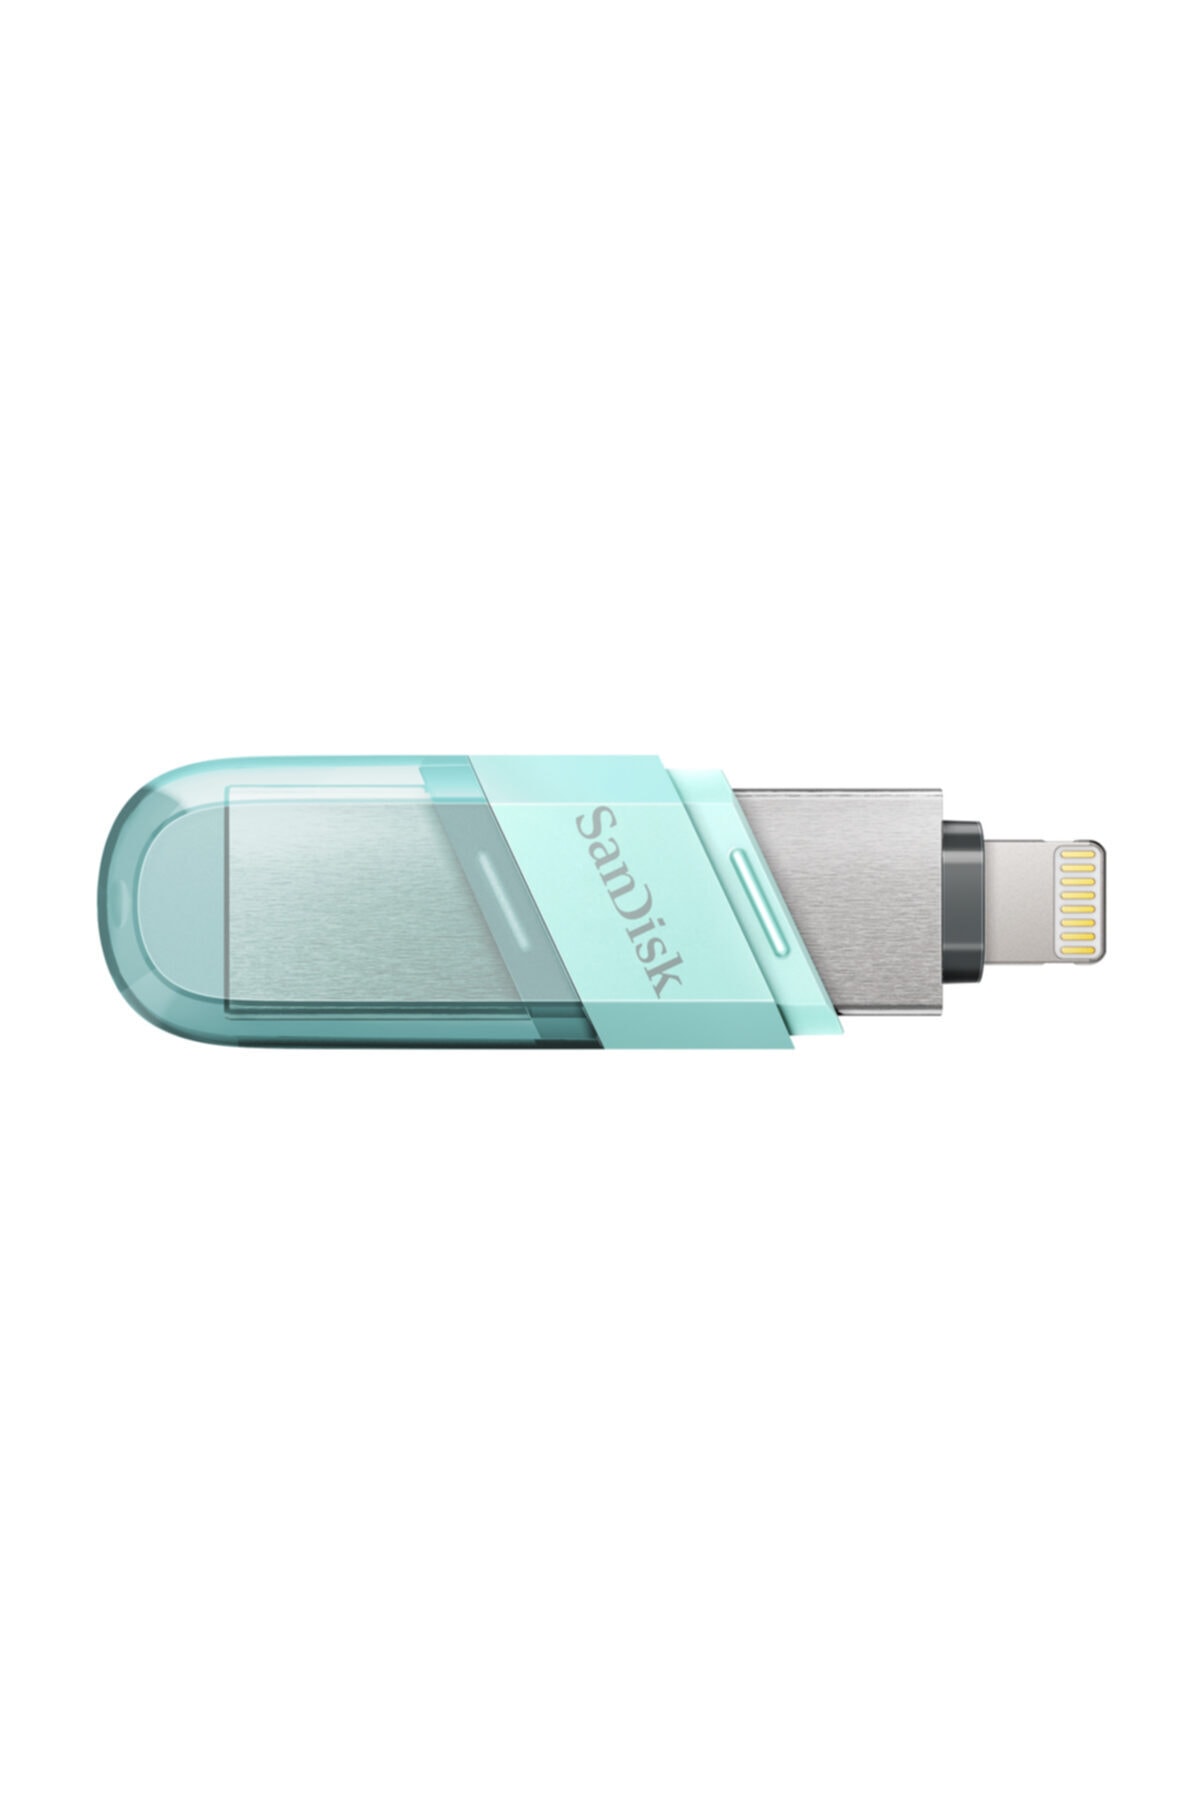 iXpand 128GB Flash Drive Flip IOS USB 3.1